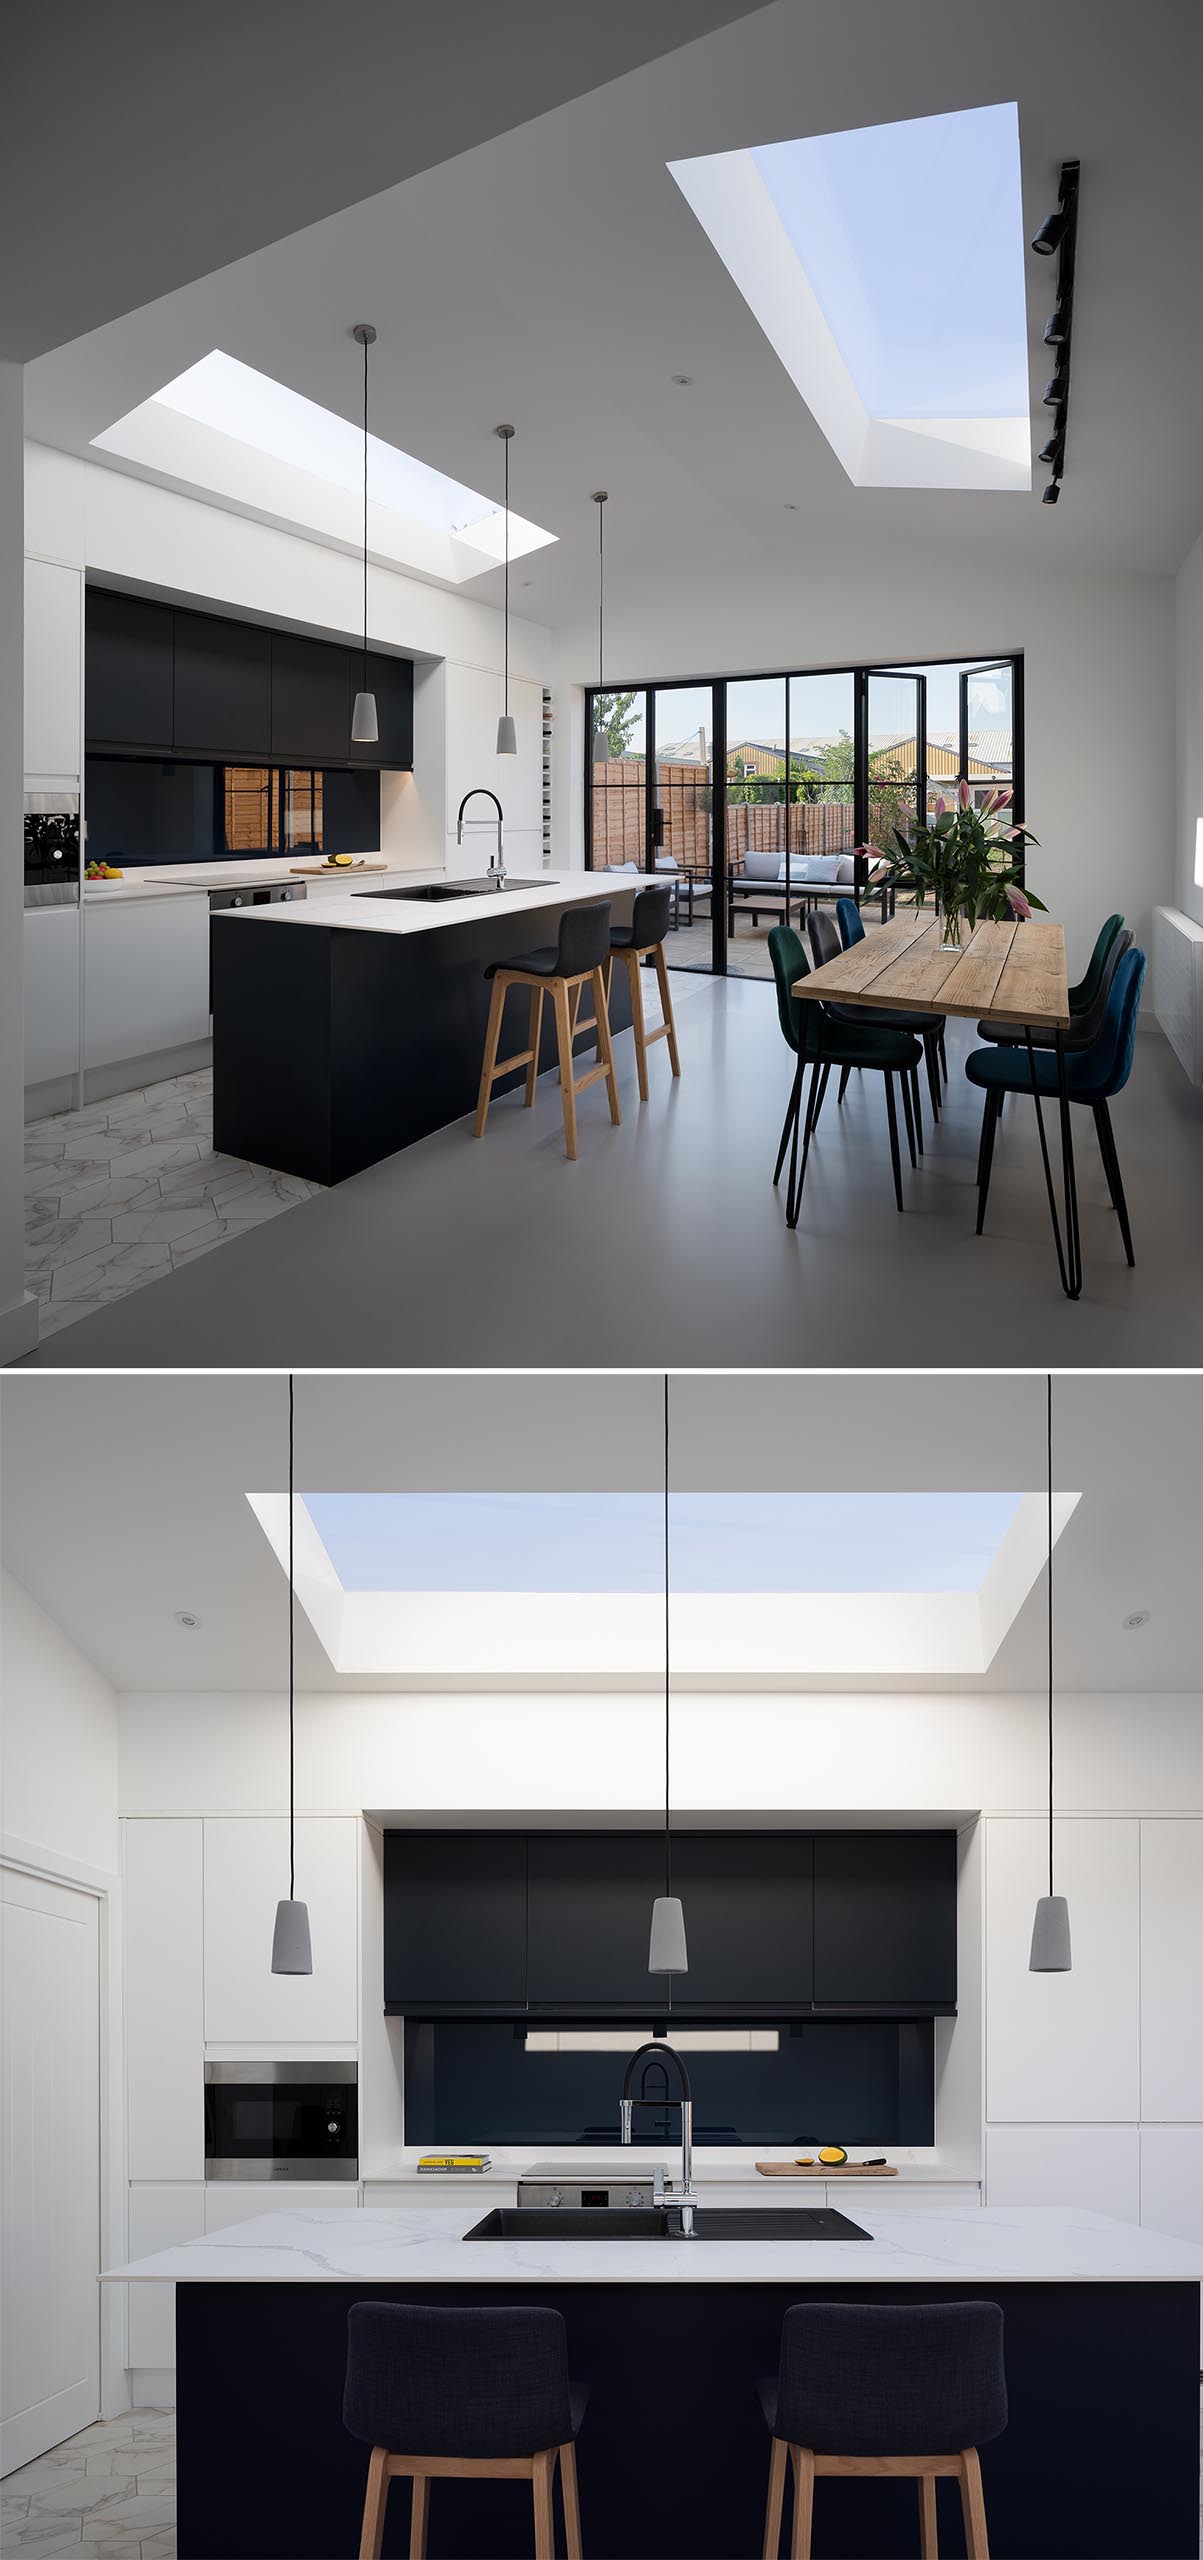 Современная кухня открытого плана и столовая с скатным потолком и мансардными окнами.